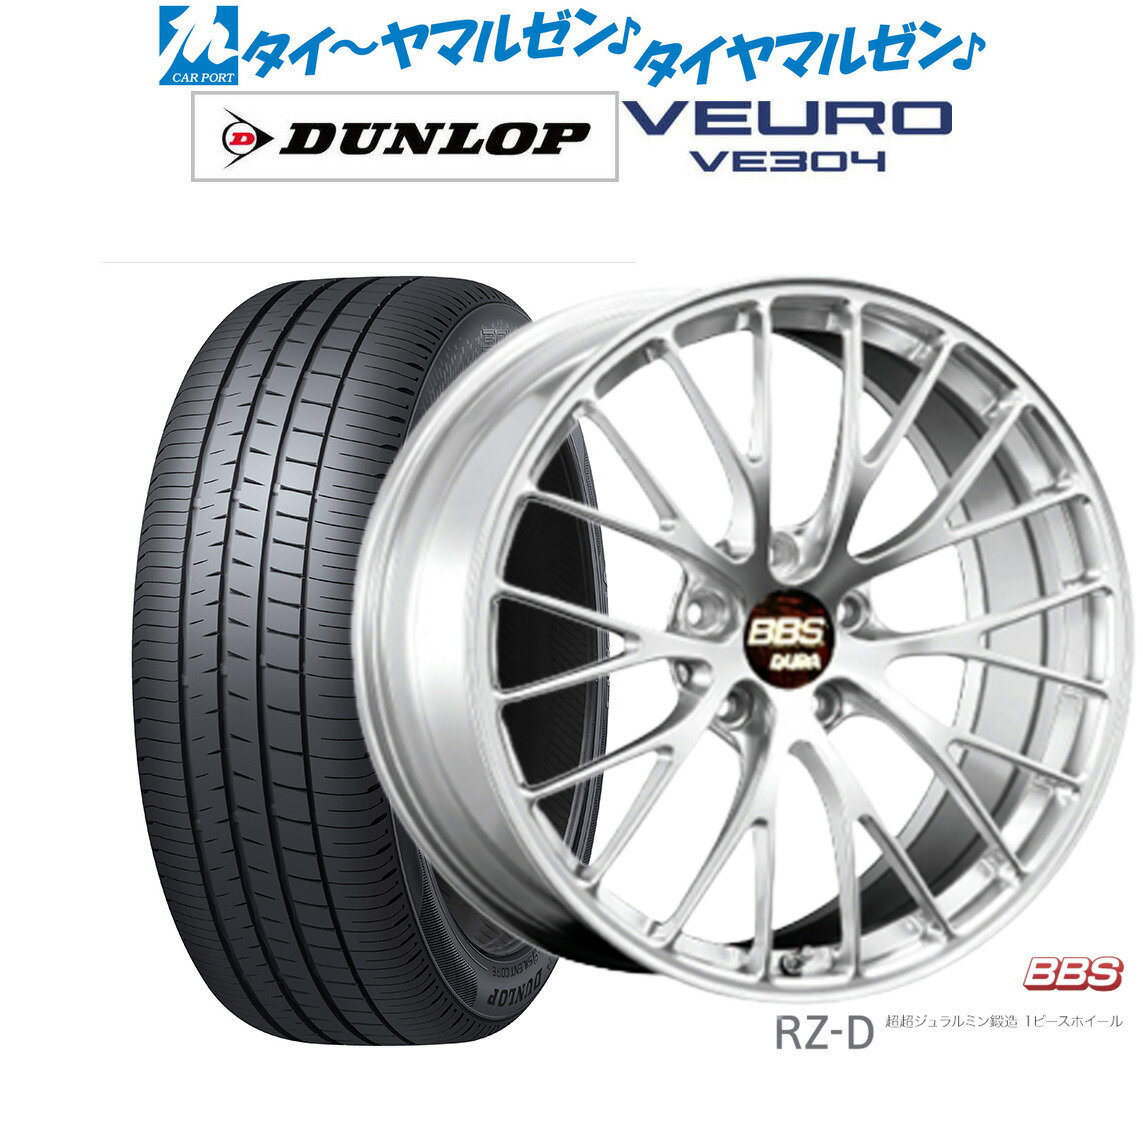 [5/20]割引クーポン配布新品 サマータイヤ ホイール4本セットBBS JAPAN RZ-D19インチ 8.5Jダンロップ VEURO ビューロ VE304225/40R19